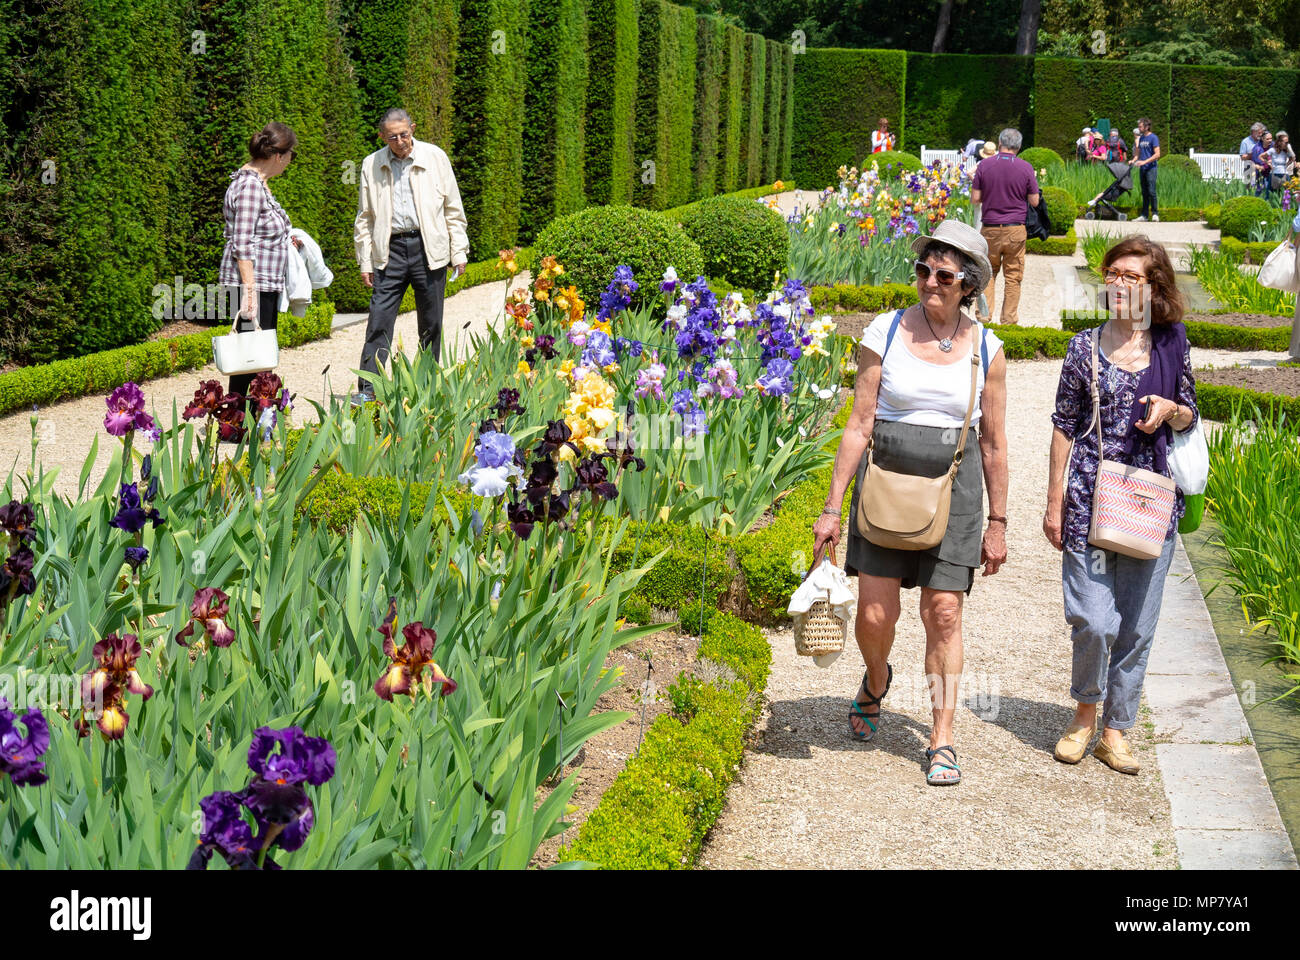 Caucasian tourists visiting iris garden, Bagatelle Park, Paris, France Stock Photo